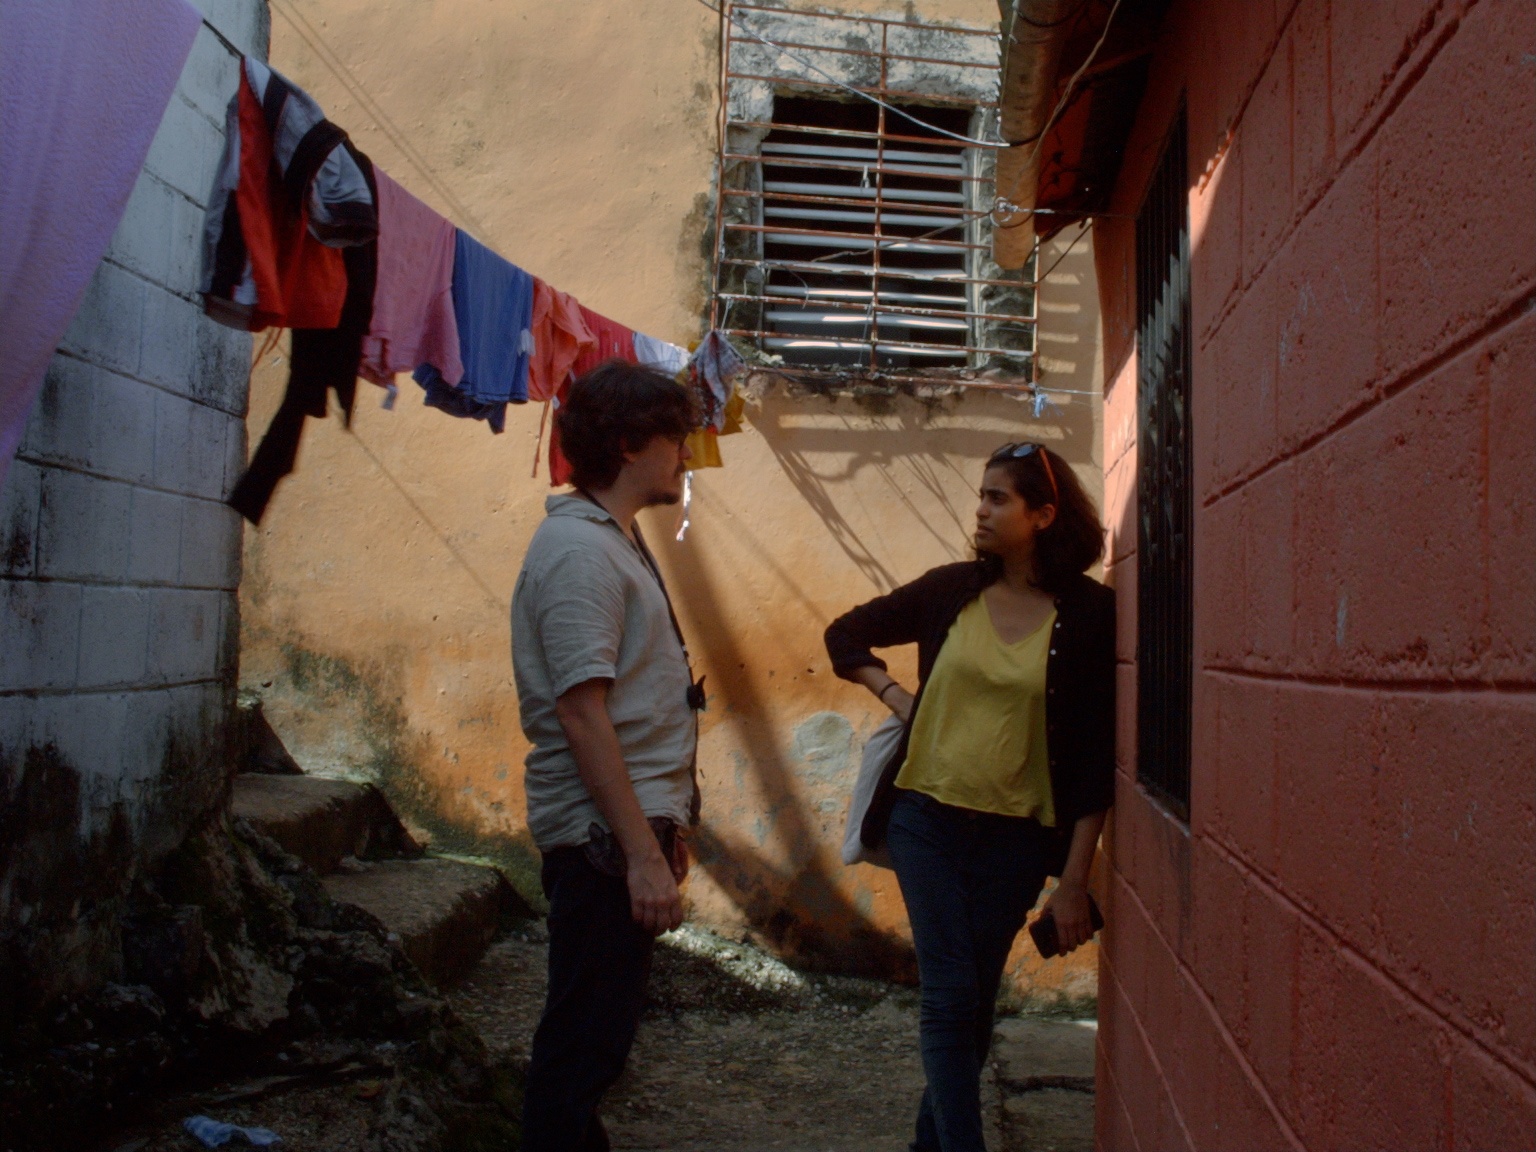 Oriol Estrada e Natalia Cabral in Una película sobre parejas